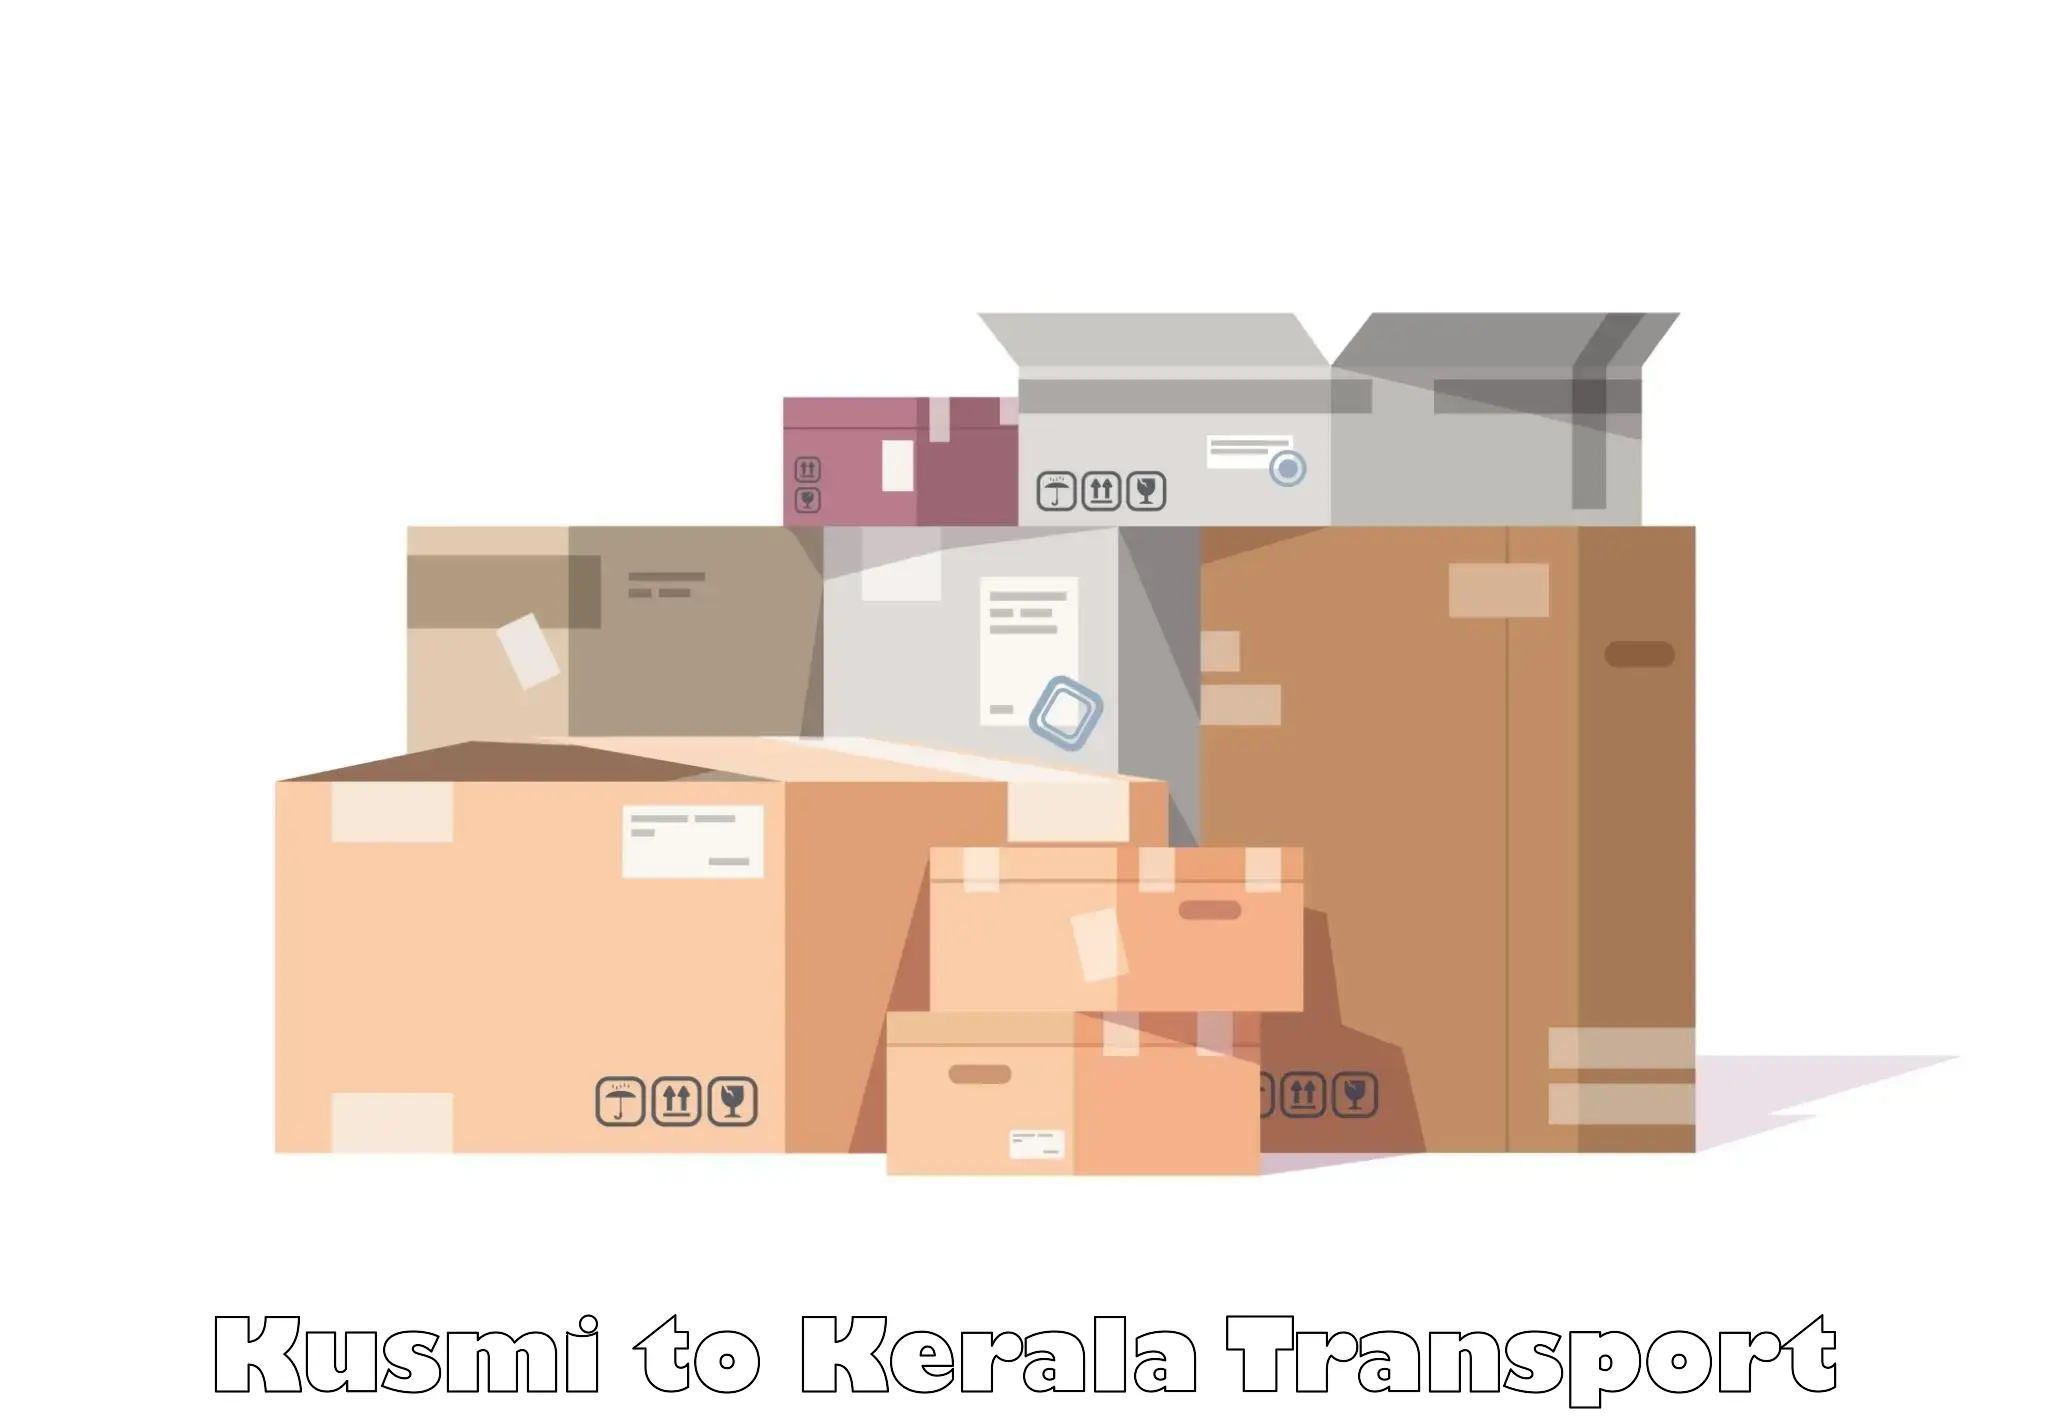 Nearby transport service Kusmi to Thiruvananthapuram